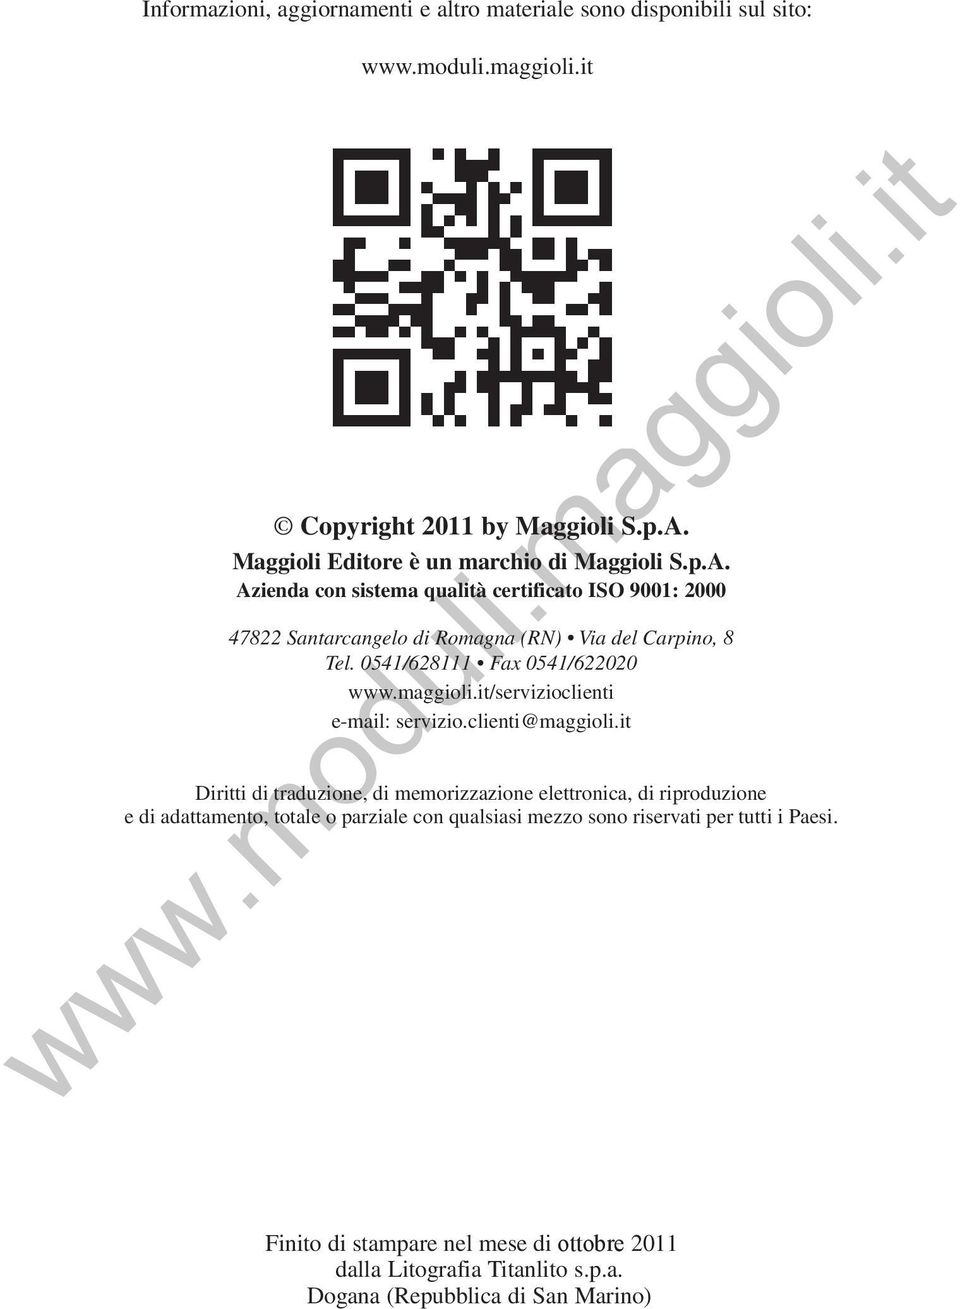 Azienda con sistema qualità certificato ISO 9001: 2000 47822 Santarcangelo di Romagna (RN) Via del Carpino, 8 Tel. 0541/628111 Fax 0541/622020 www.maggioli.